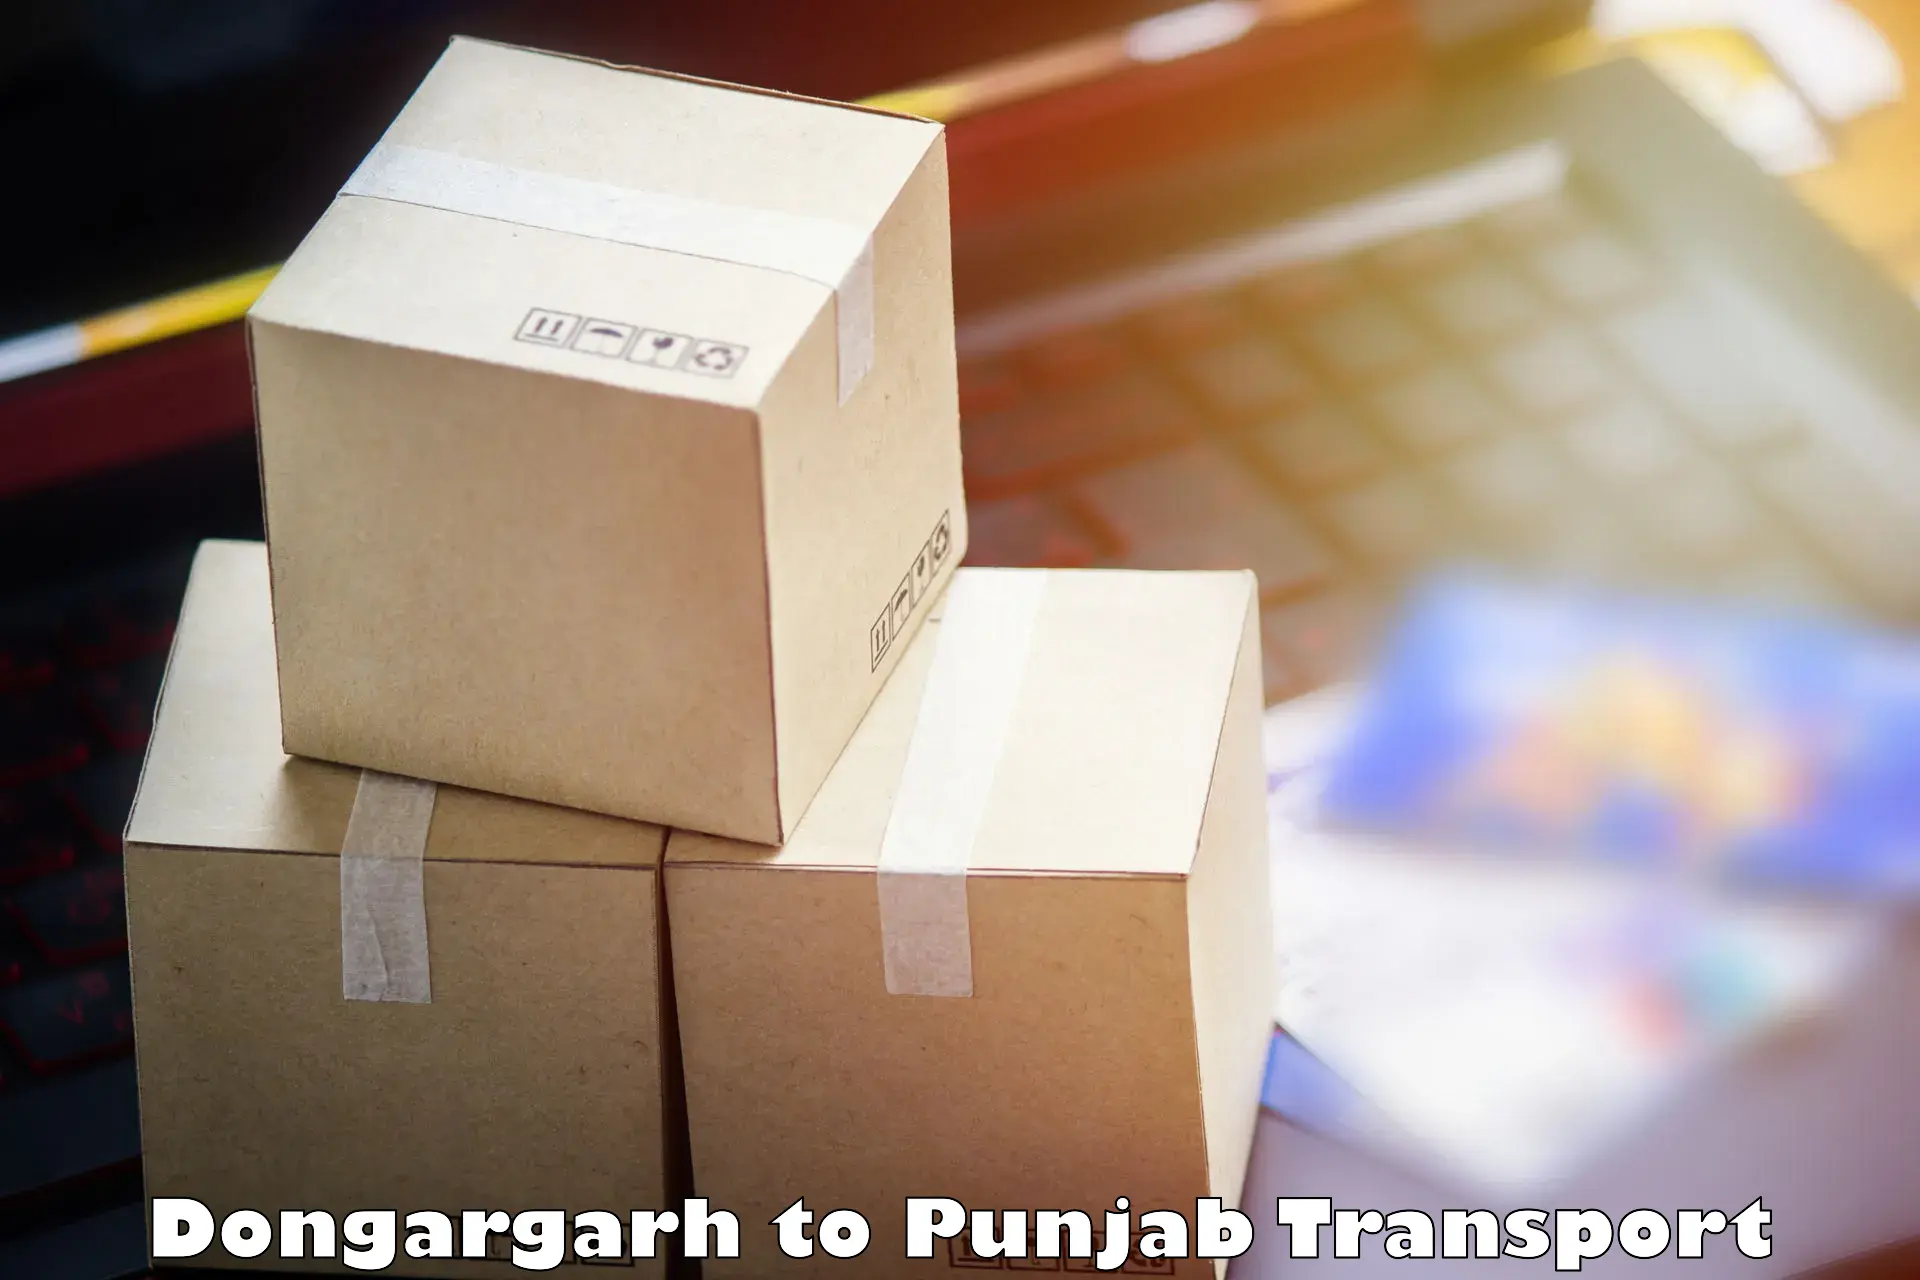 Transportation solution services Dongargarh to Dinanagar